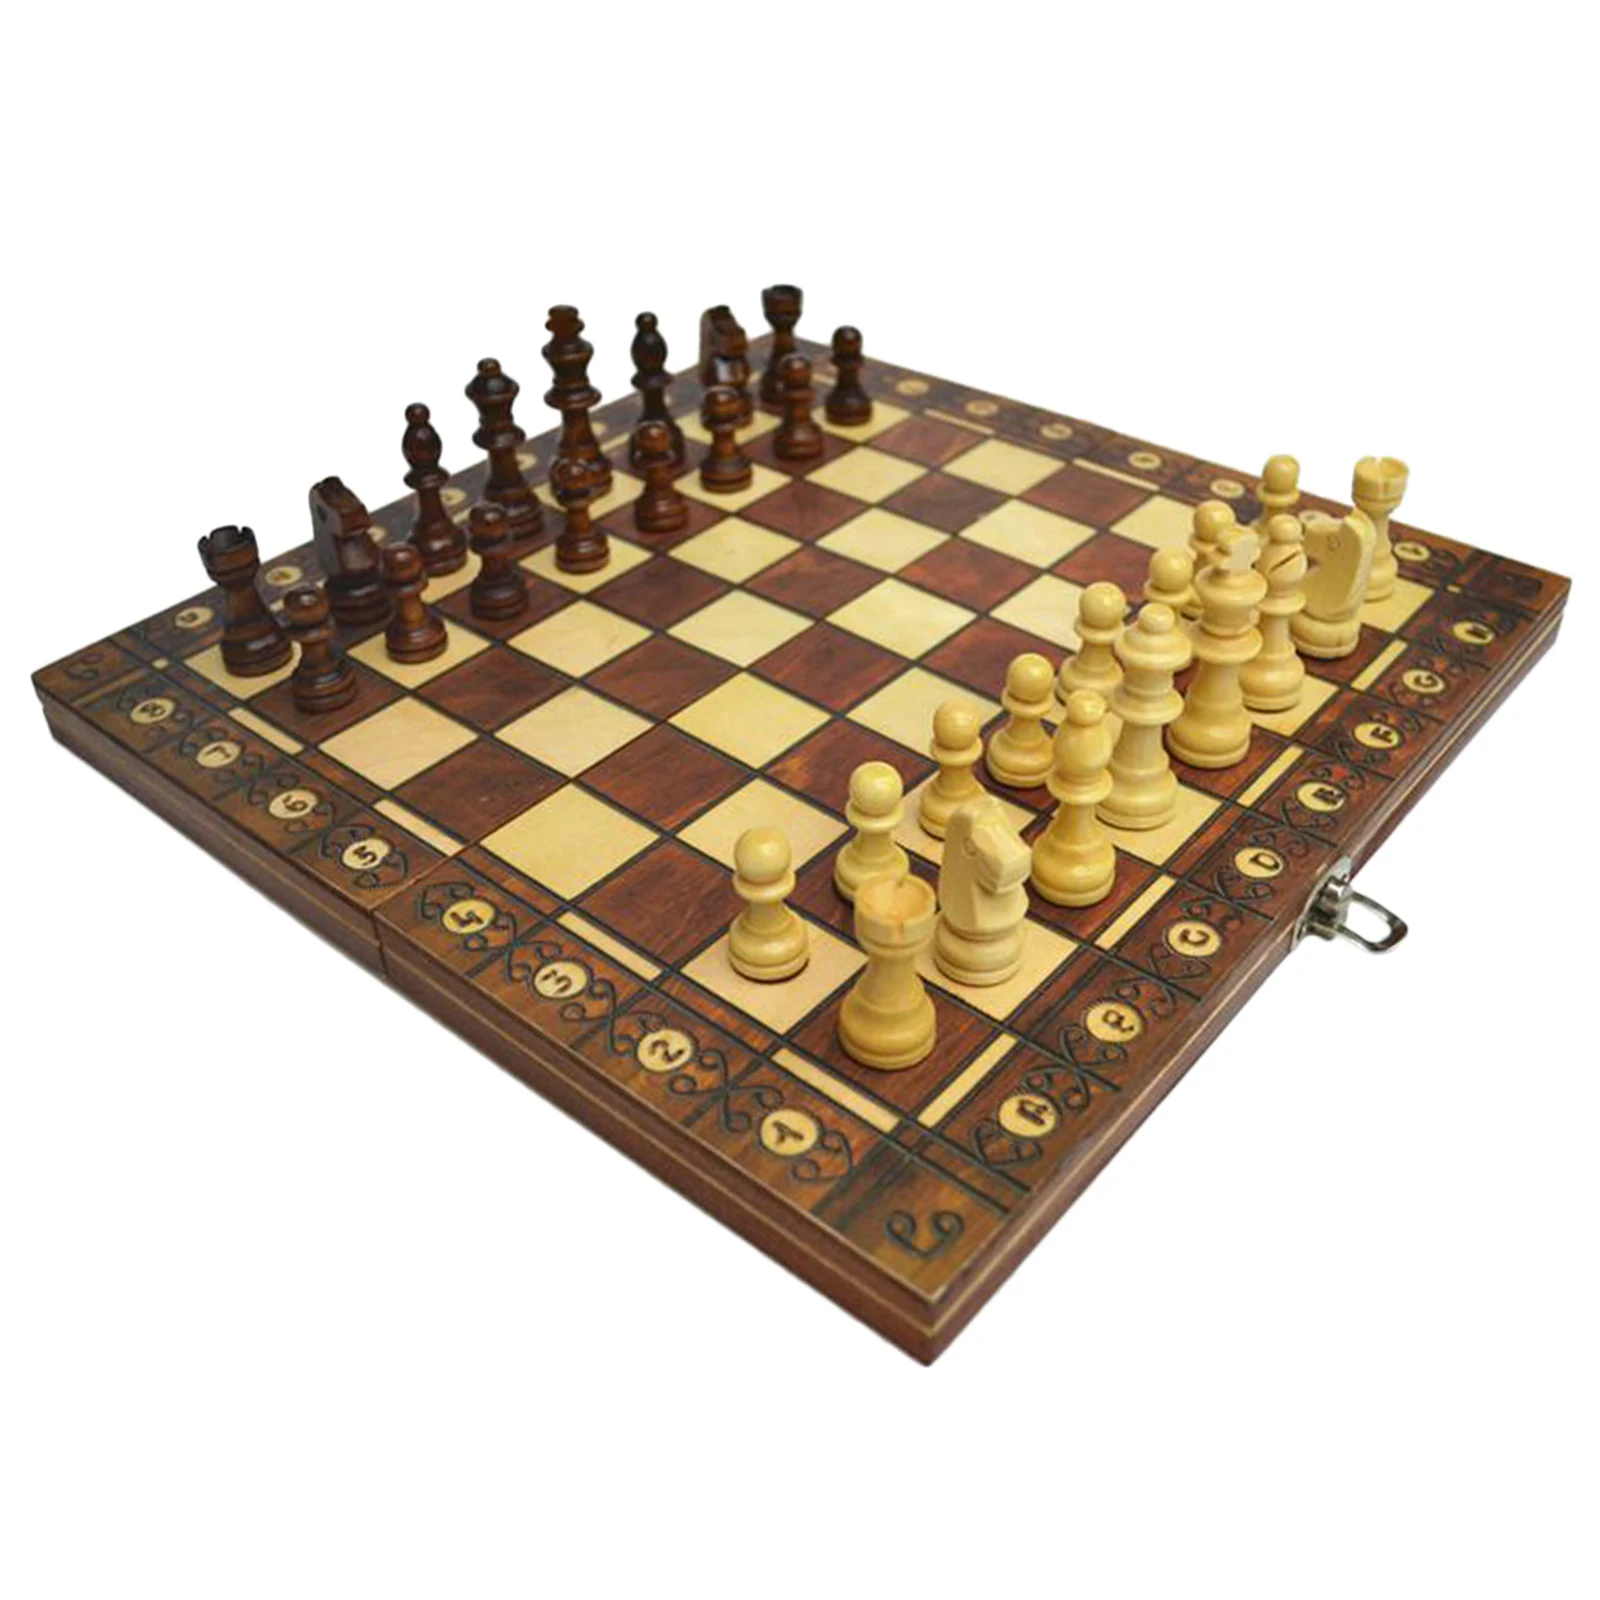 Falten Holz Schach Set Reise Spiel 3 in 1 Schach Backgammon Checkers 15x15inch 